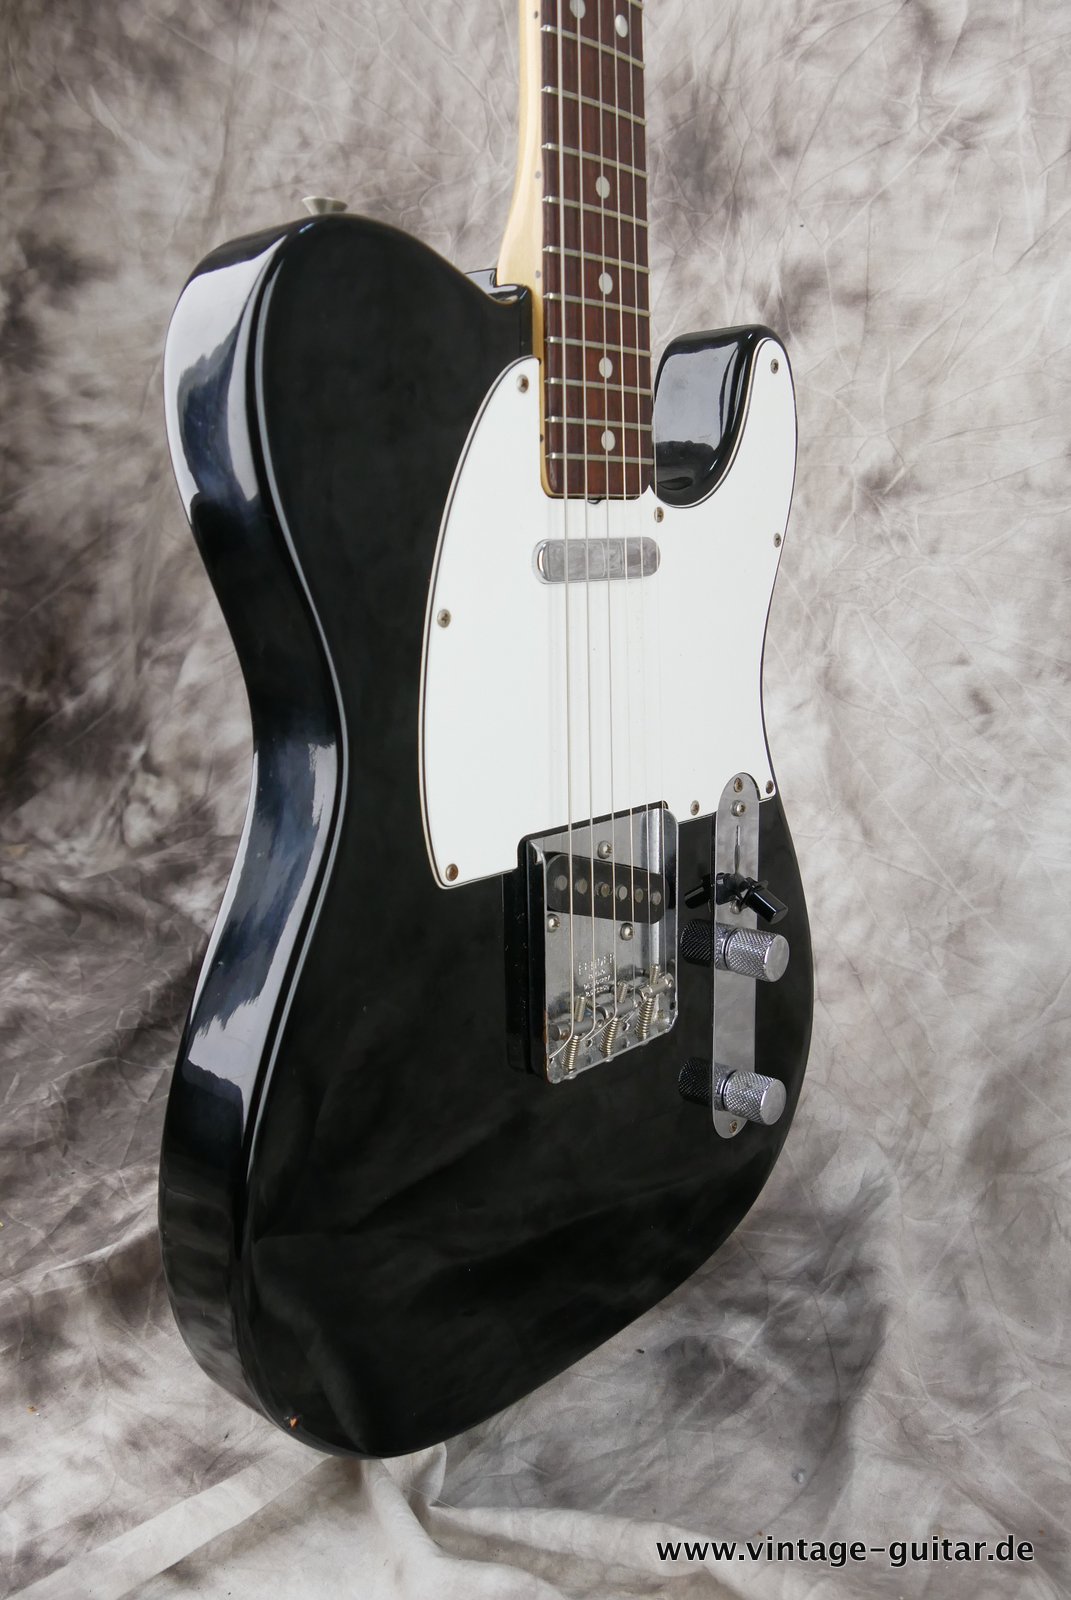 Fender-Telecaster-1972-black-over-sunburst-009.JPG